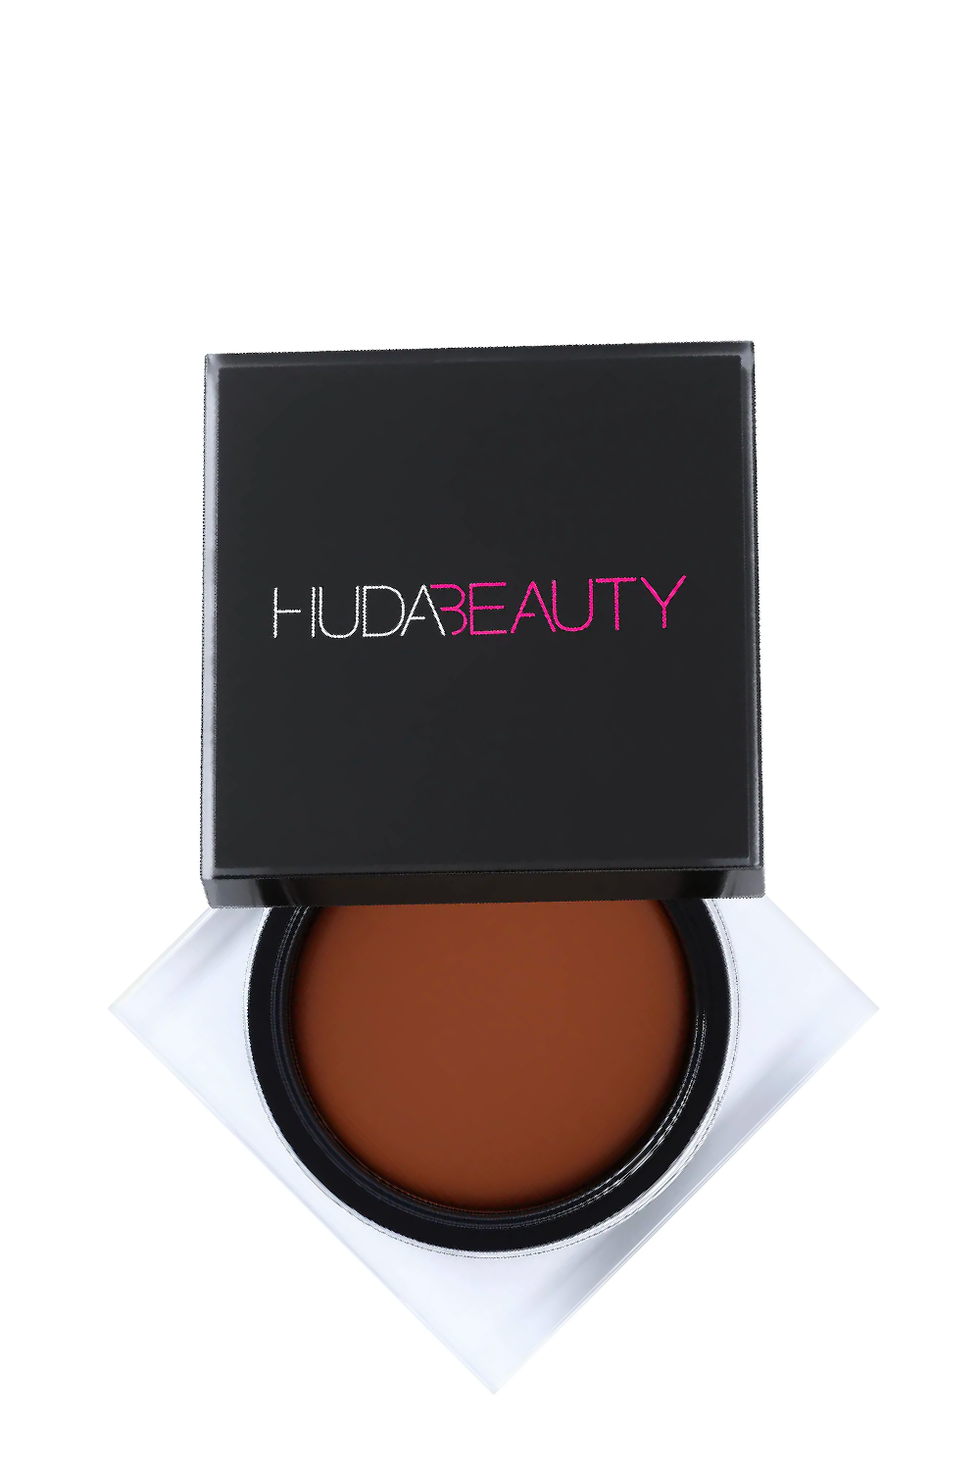 Huda Beauty Medium Tantour Contour & Bronzer Cream - 0.42 oz